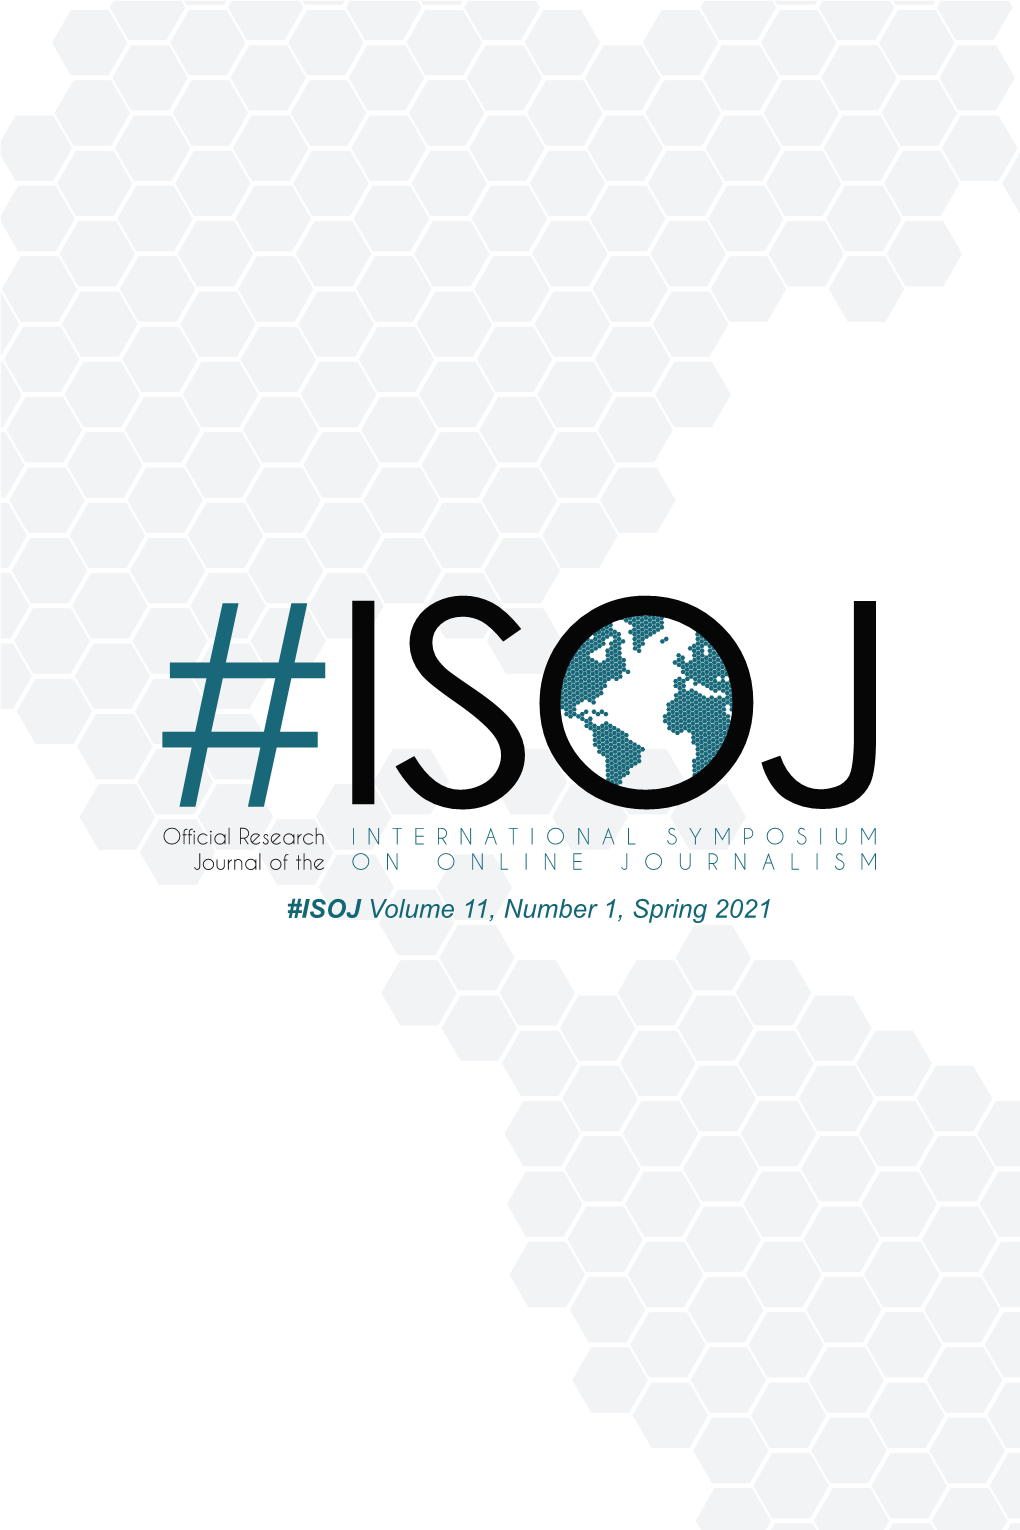 ISOJ Volume 11, Number 1, Spring 2021 #ISOJ Volume 11, Number 1, Spring 2021